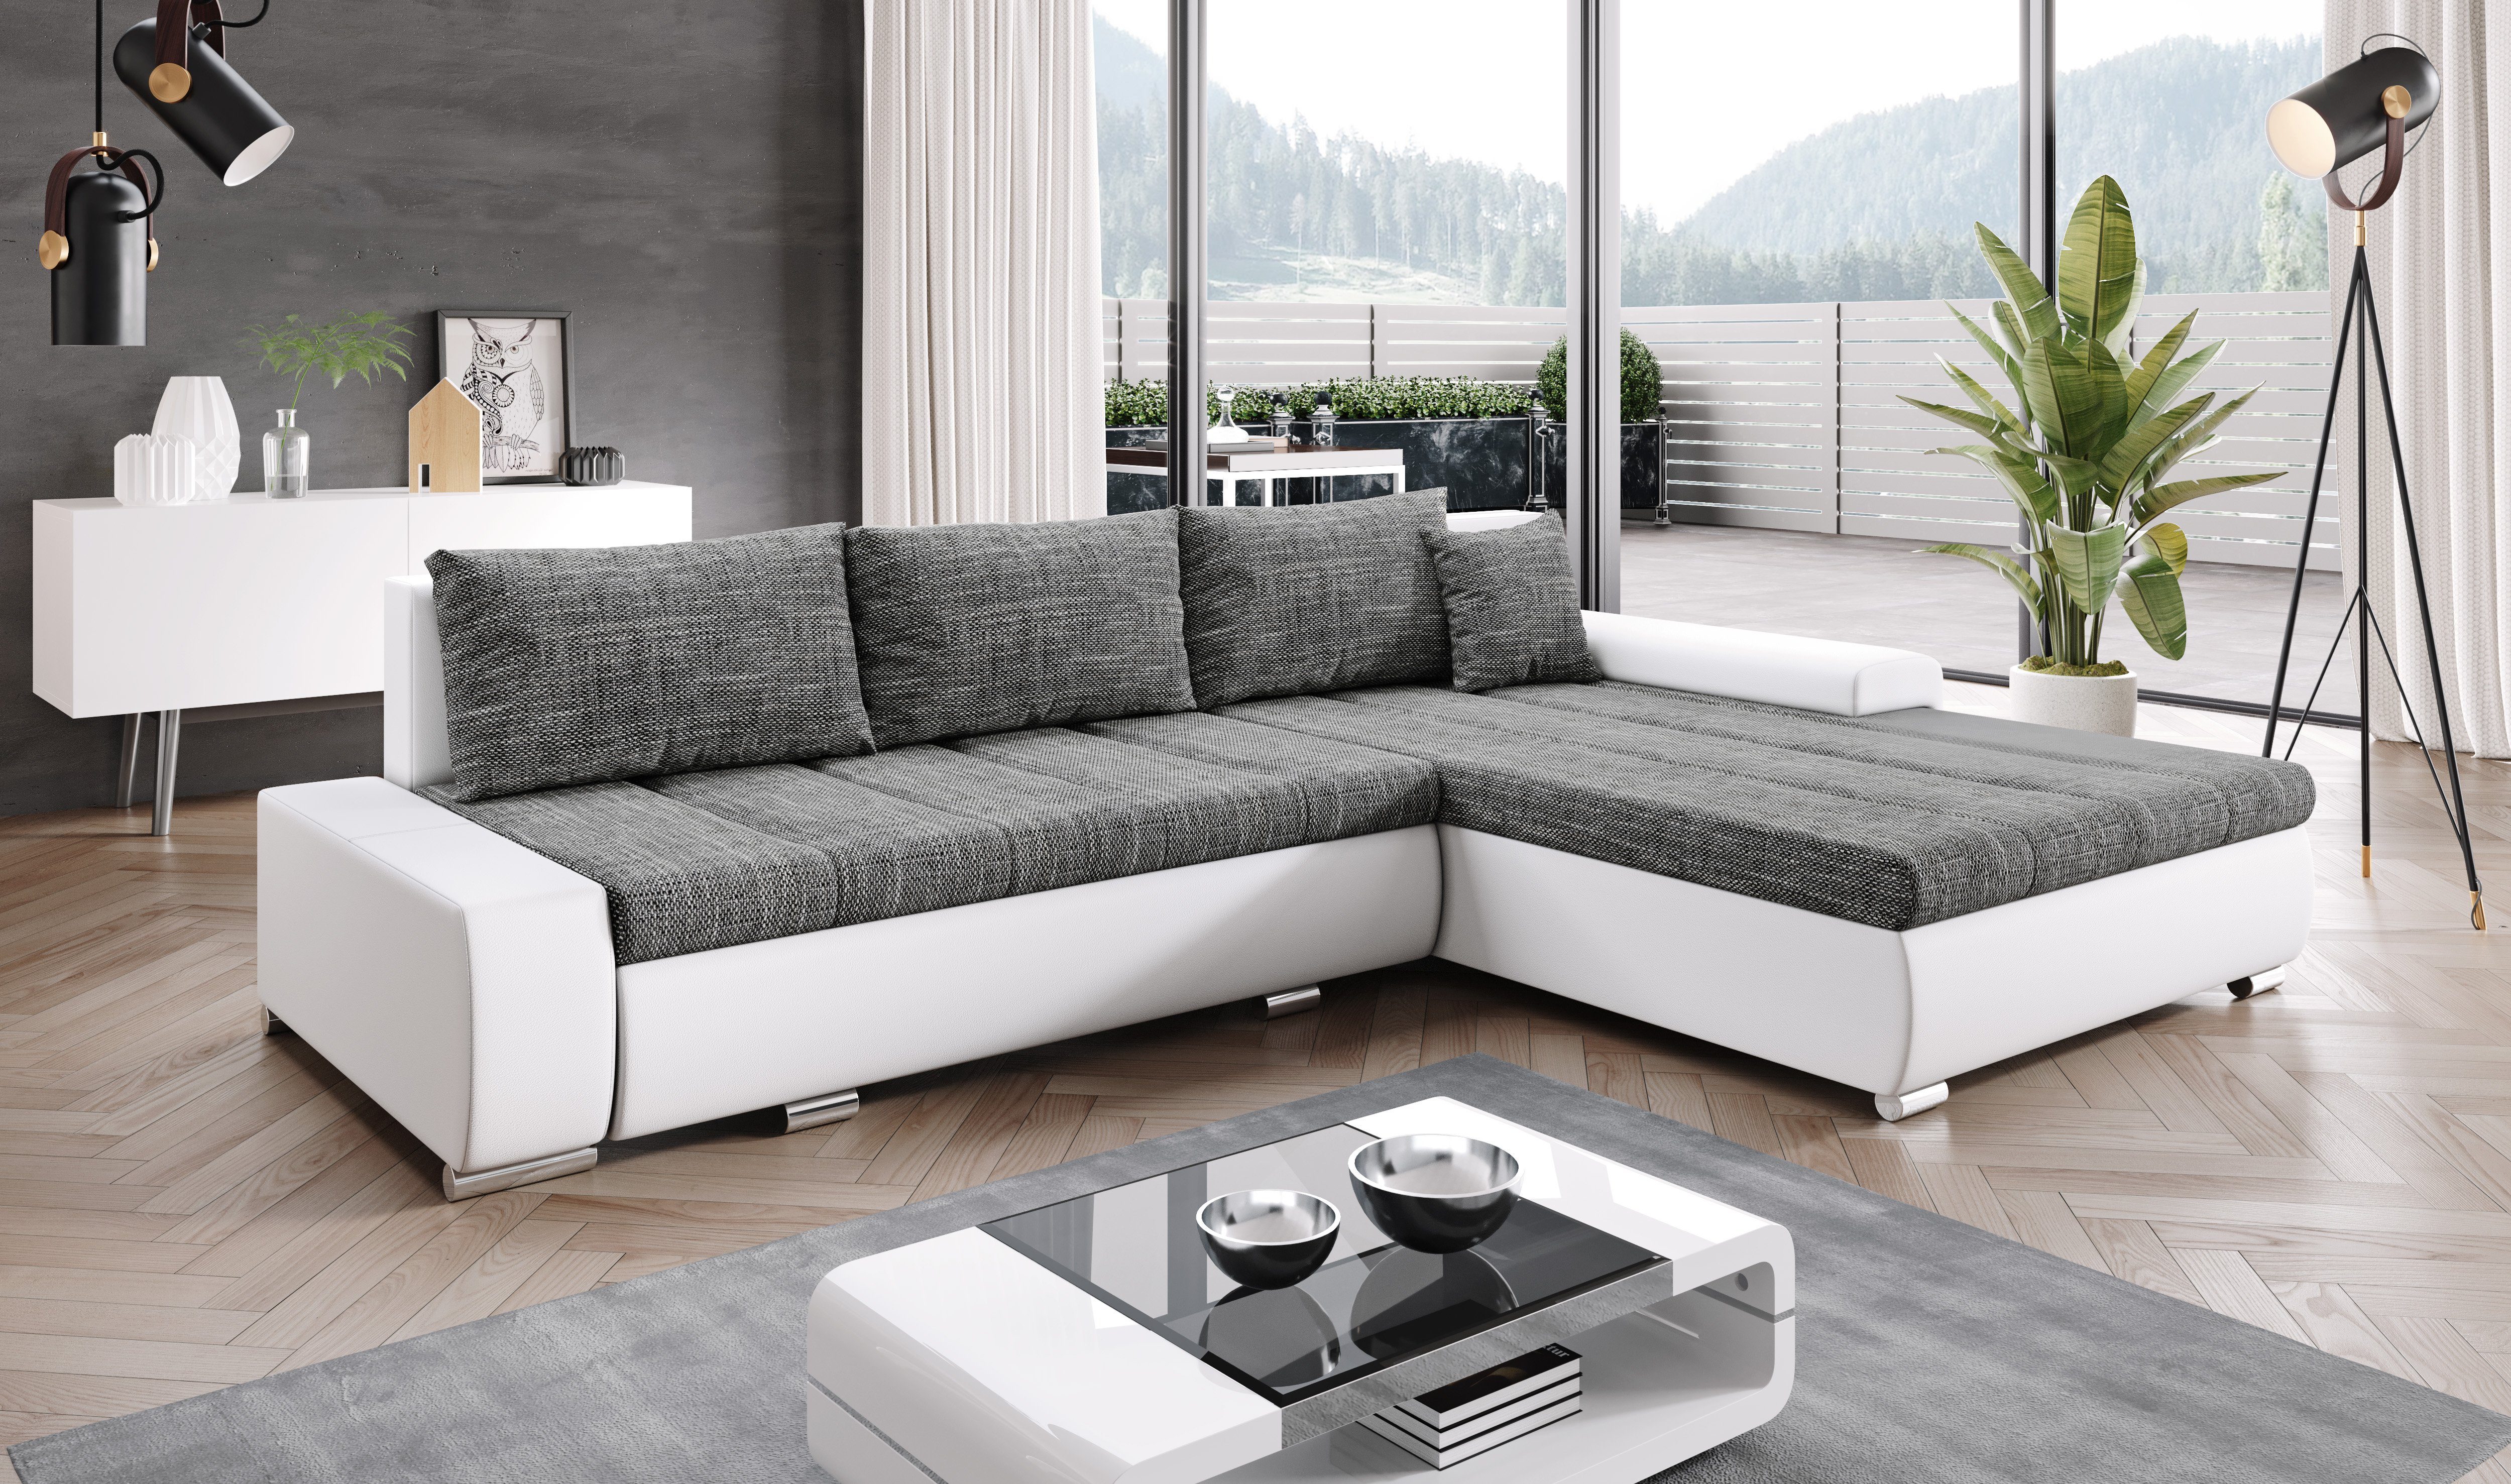 Ecksofa cm, Sofa mit Braun/Weiß Schlaffunktion Kissen T210 Bettkasten EU MA120 BE01 x Furnix Made TOMMASO hochwertig, x Stoff/Kunstleder in B297 H85 Couch,